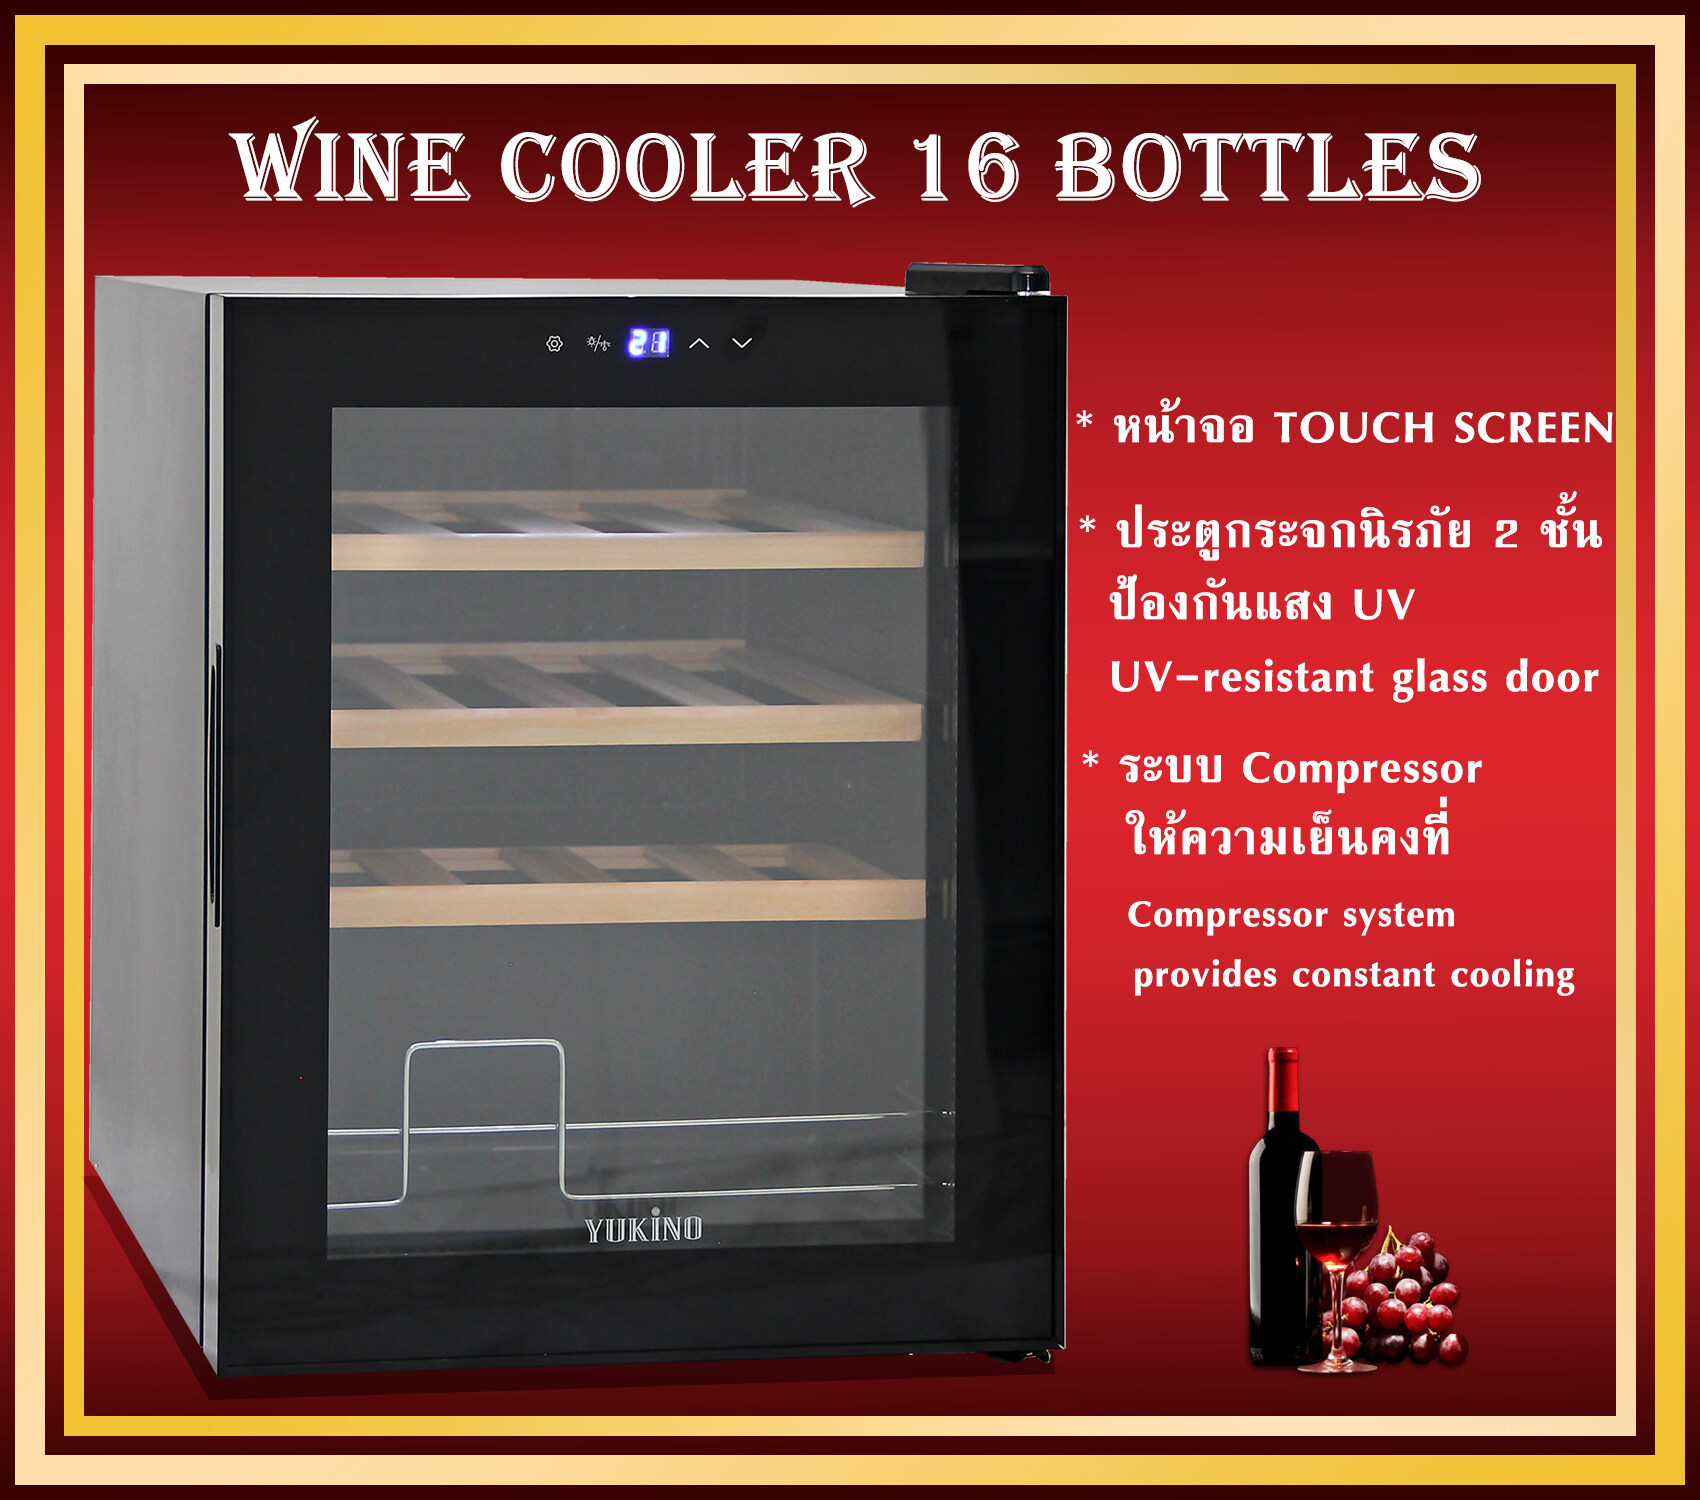 ตู้แช่ ตู้แช่ไวน์  ตู้ไวน์  ตู้แช่ไวน์คุณภาพสูง ตู้เก็บไวน์  16 bottles  Wine cabinet Wine cooler , Wine cellar  ขนาดบรรจุ 16 ขวด  รุ่นJC-48